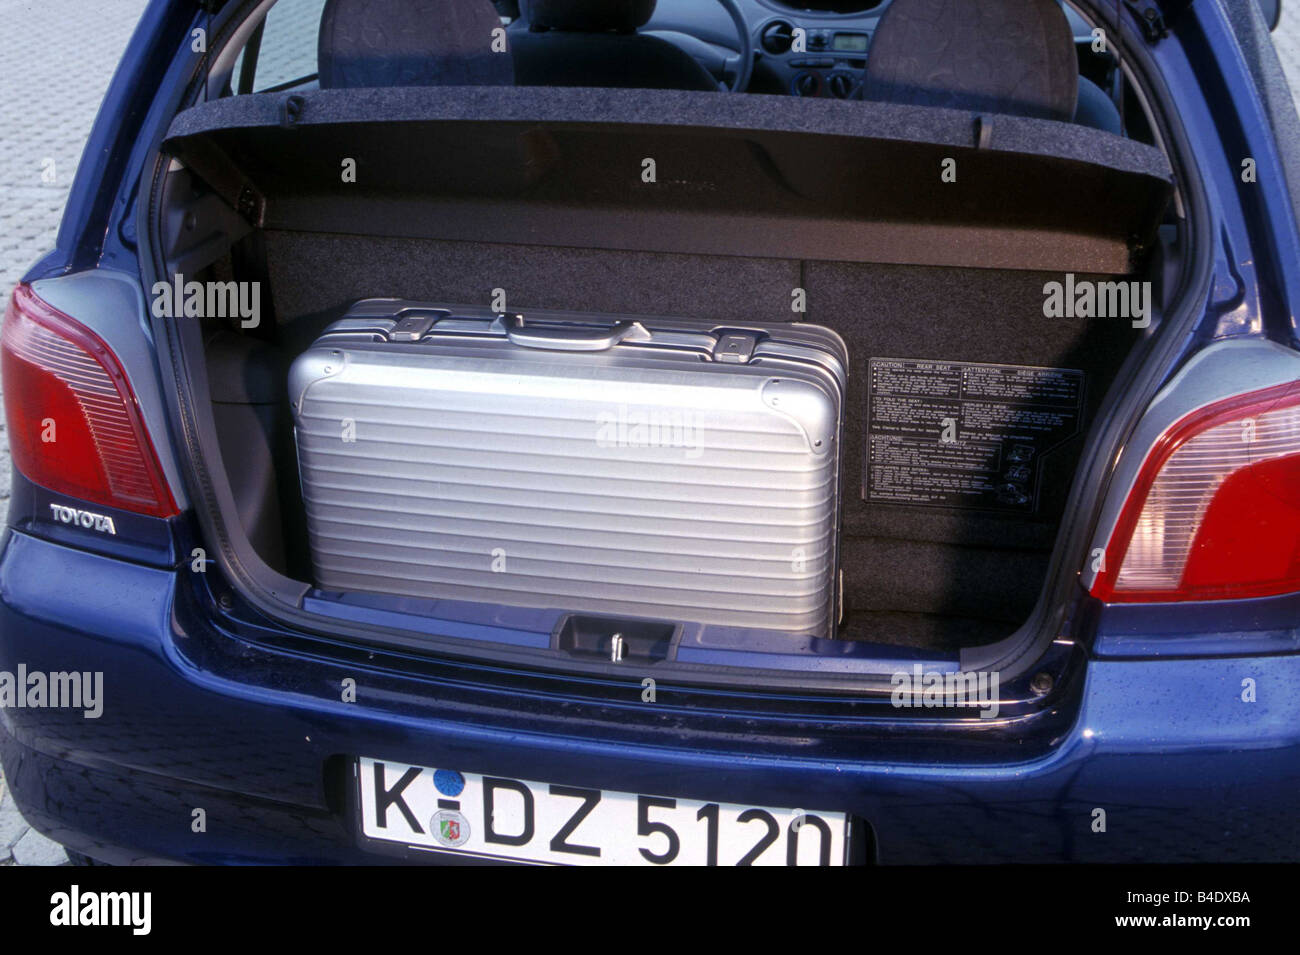 Toyota yaris blue -Fotos und -Bildmaterial in hoher Auflösung – Alamy